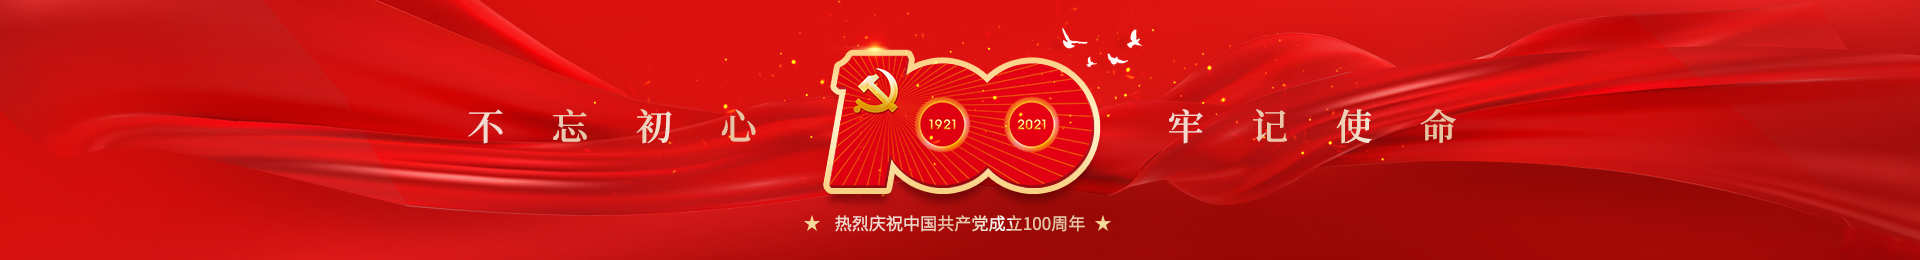 【百年心向党 共筑中国梦】华神科技热烈庆祝中国共产党成立100周年